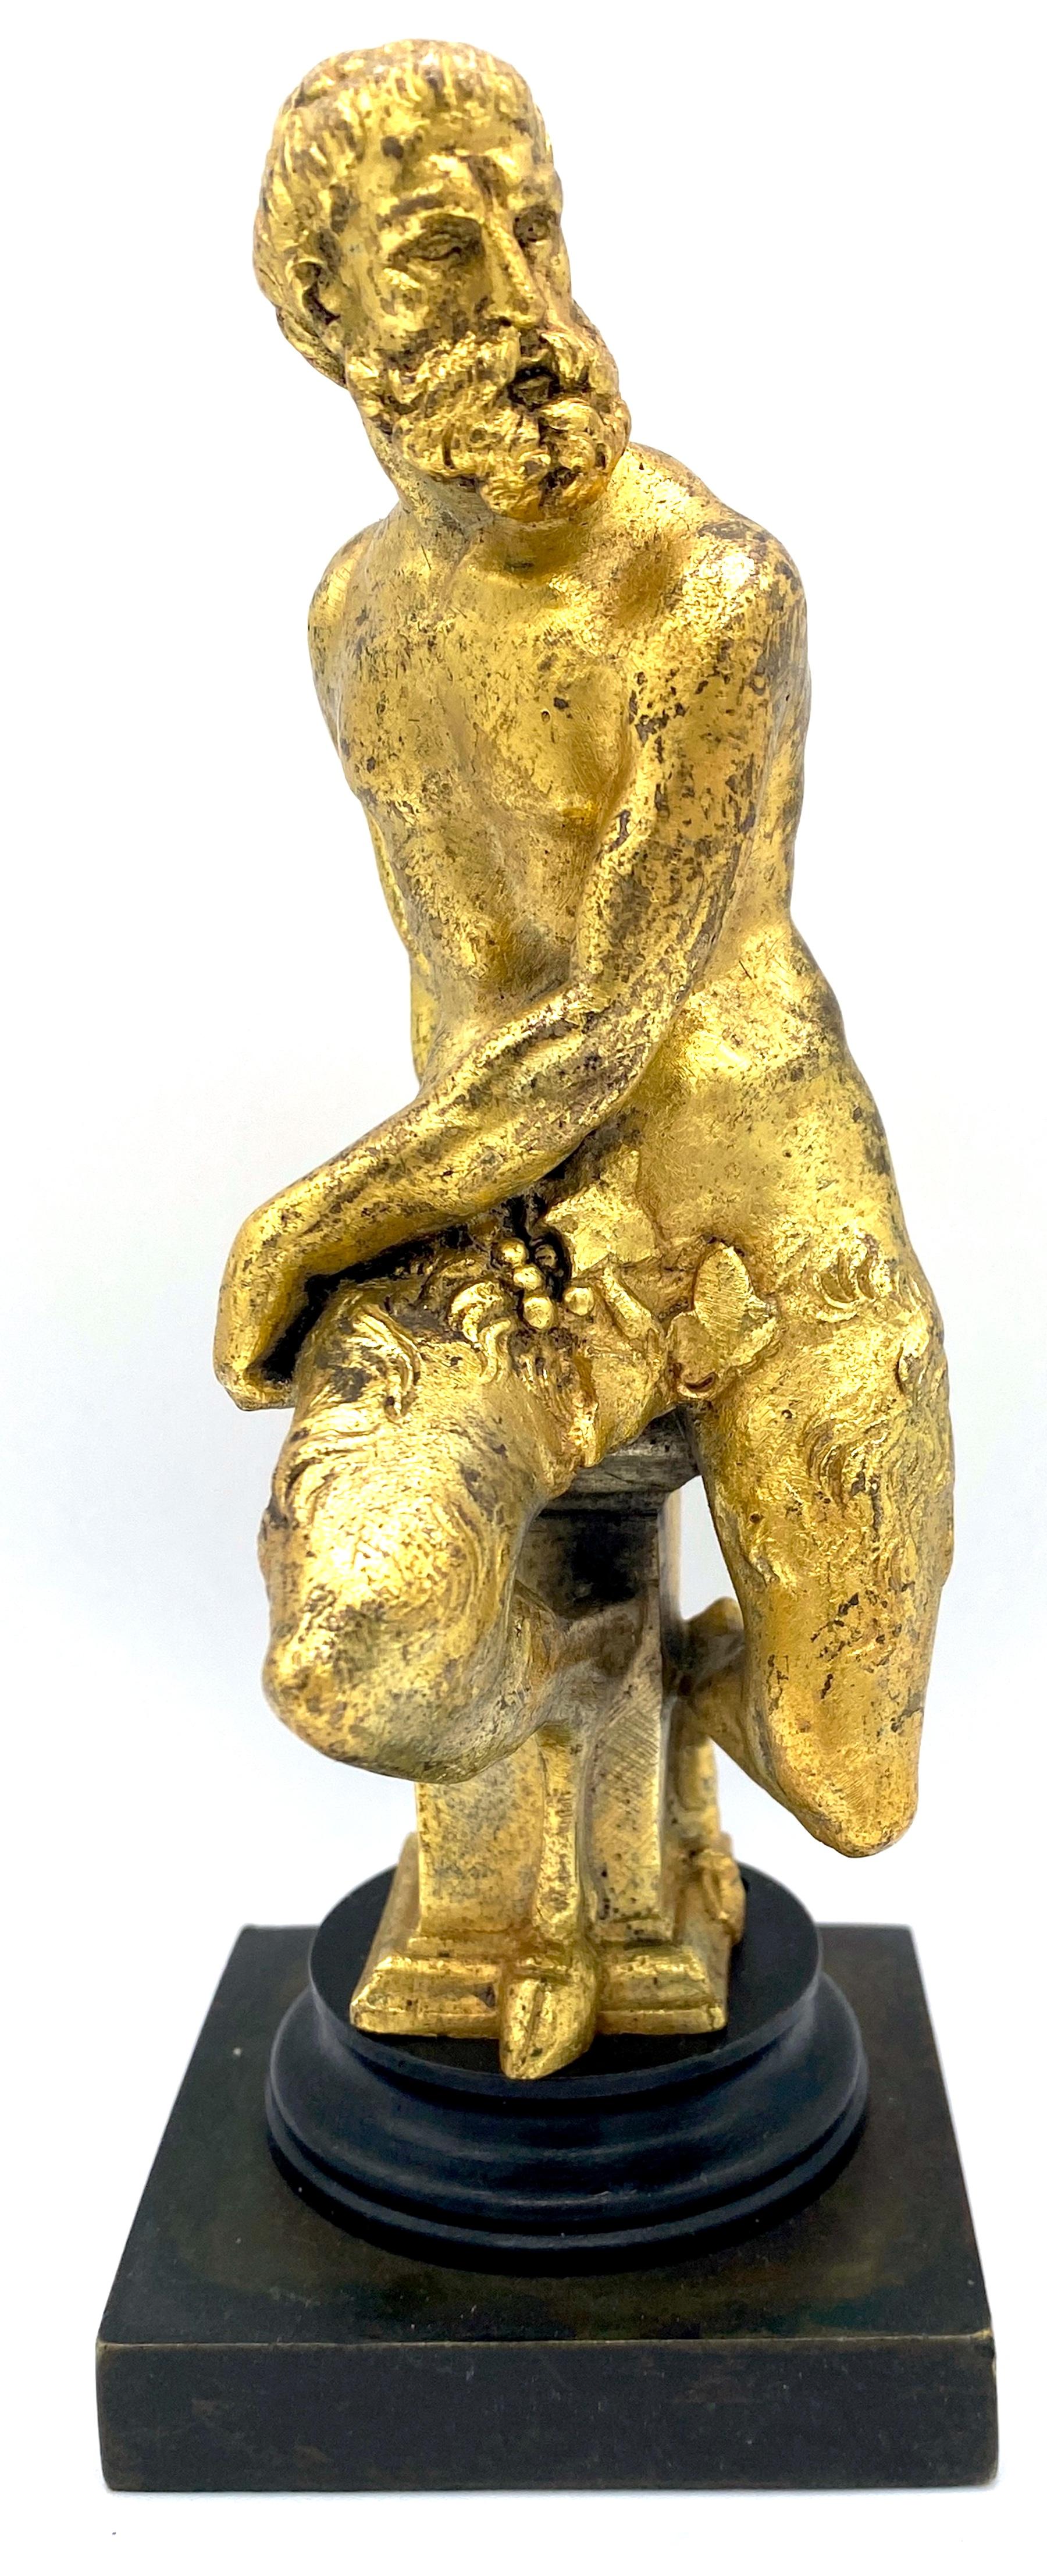 Sculpture en bronze patiné et bronze doré du 19e siècle représentant un satyre assis 
France, Circa 1875

Sculpture en bronze patiné et bronze doré du XIXe siècle représentant un satyre assis, réalisée vers 1875. Cette sculpture en bronze doré bien